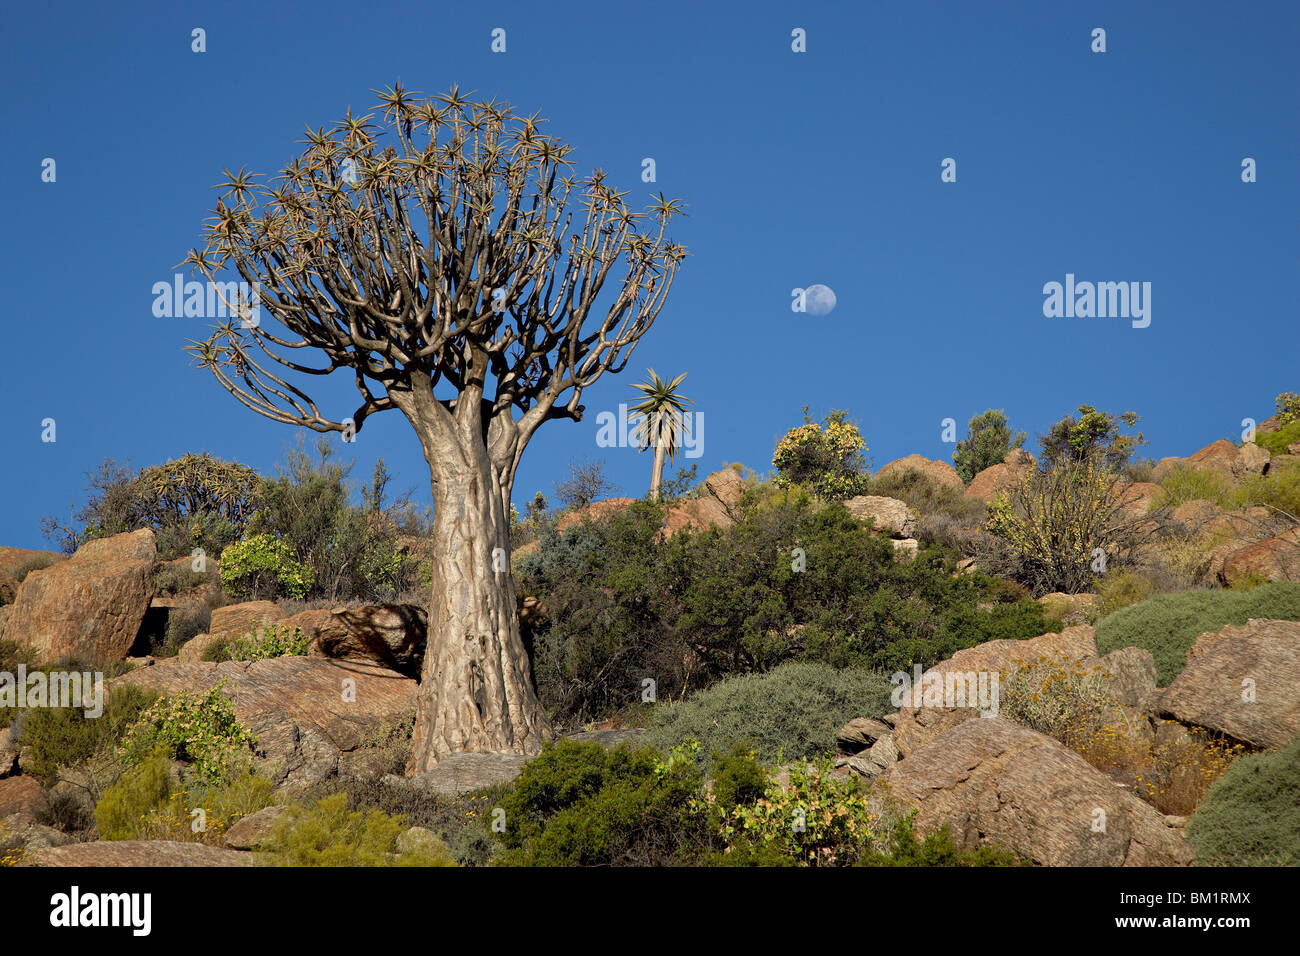 Arbre carquois (kokerboom (Aloe dichotoma)) avec près de-pleine lune, springbok, Afrique du Sud, l'Afrique Banque D'Images